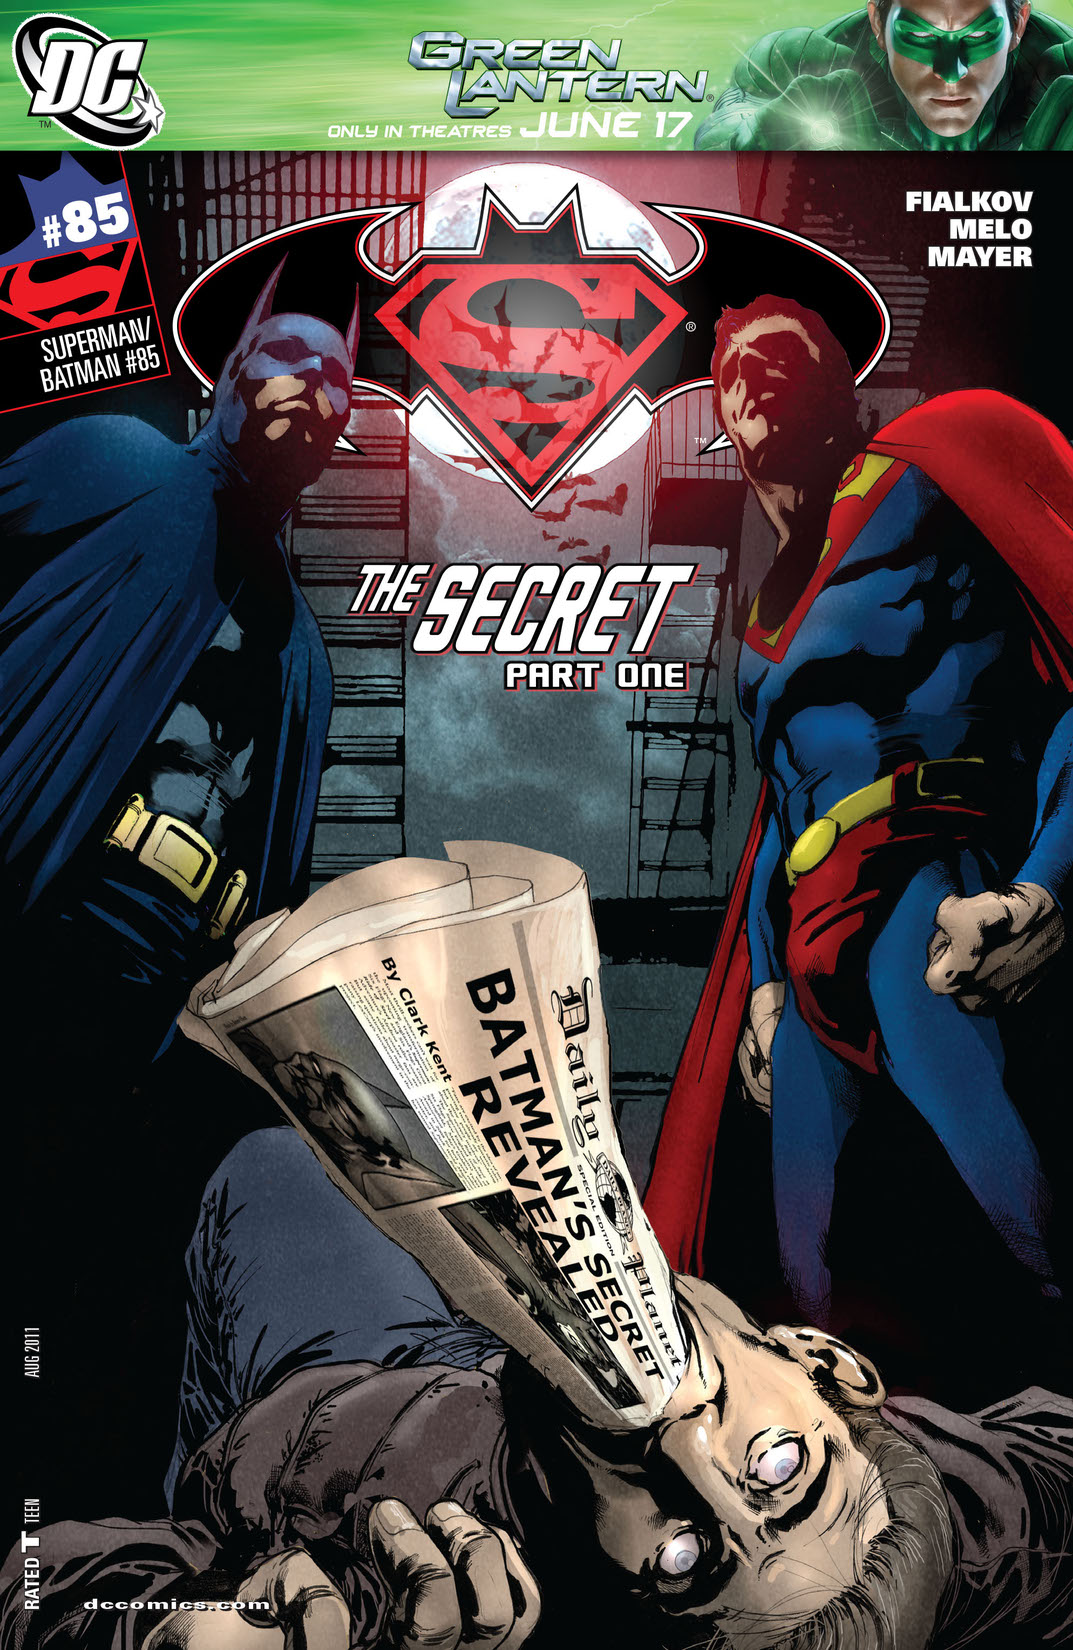 Superman/Batman #85 preview images